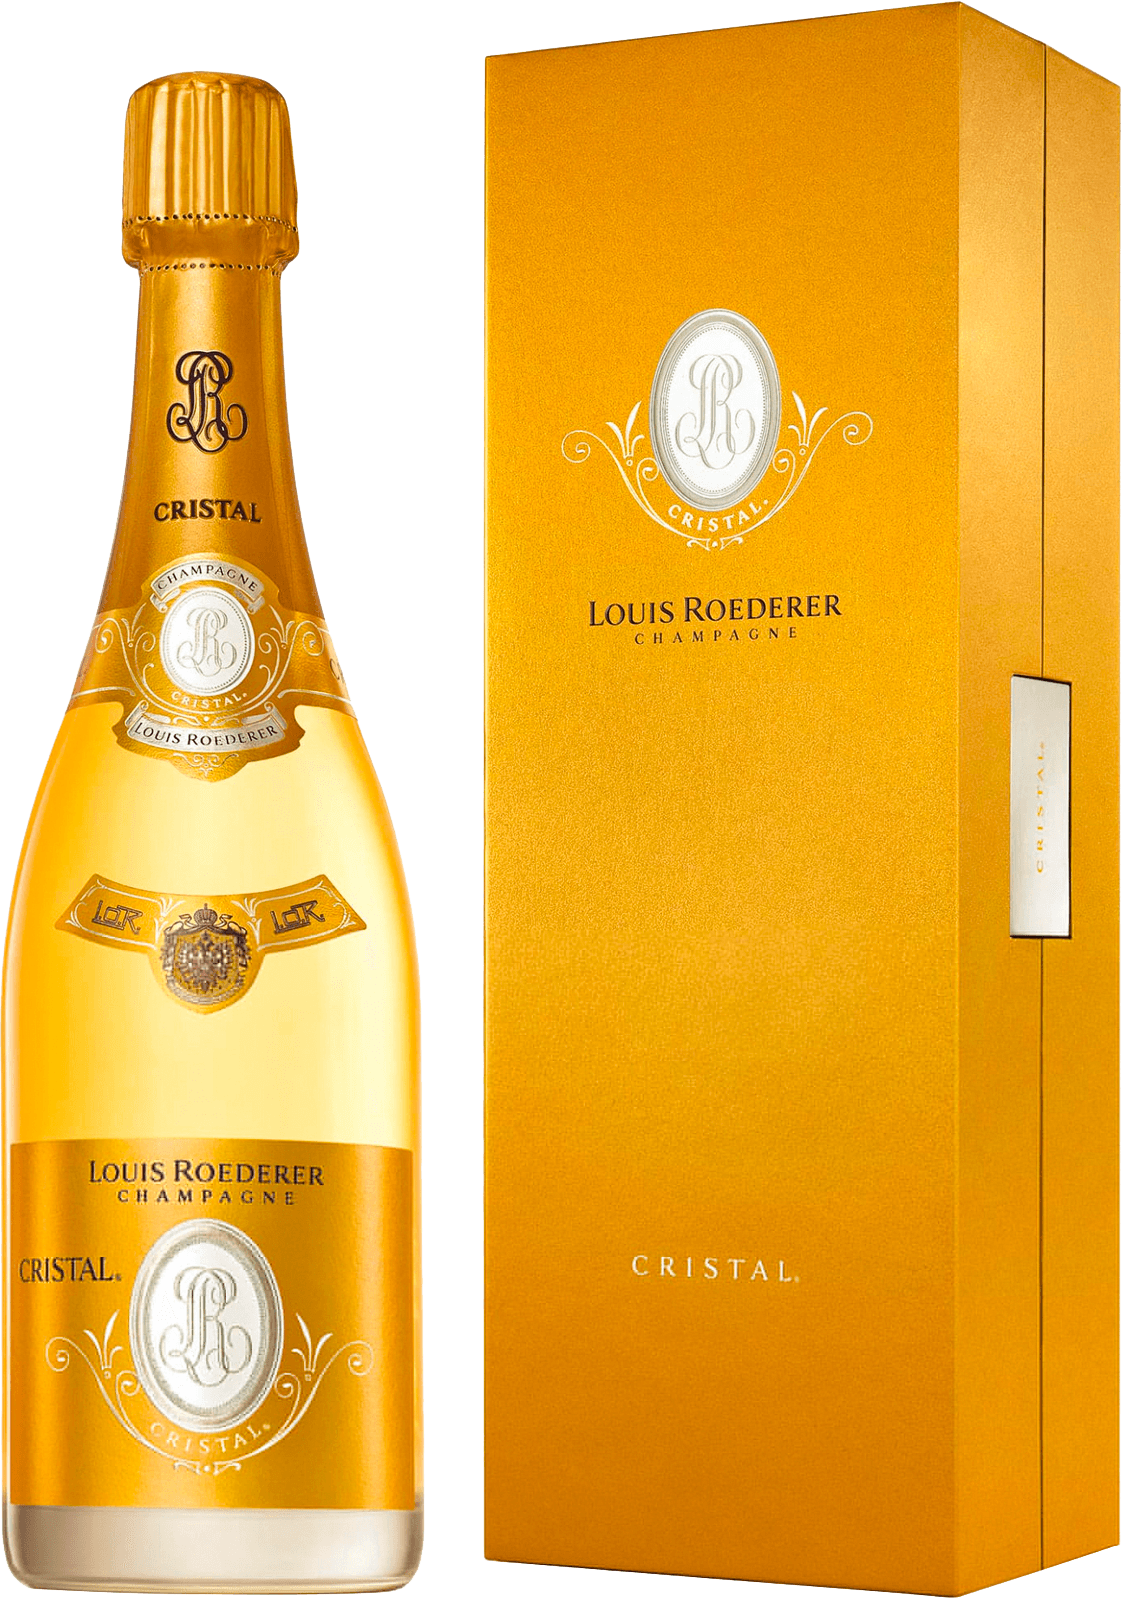 Cristal roederer en coffret 2005  Roederer, Champagne